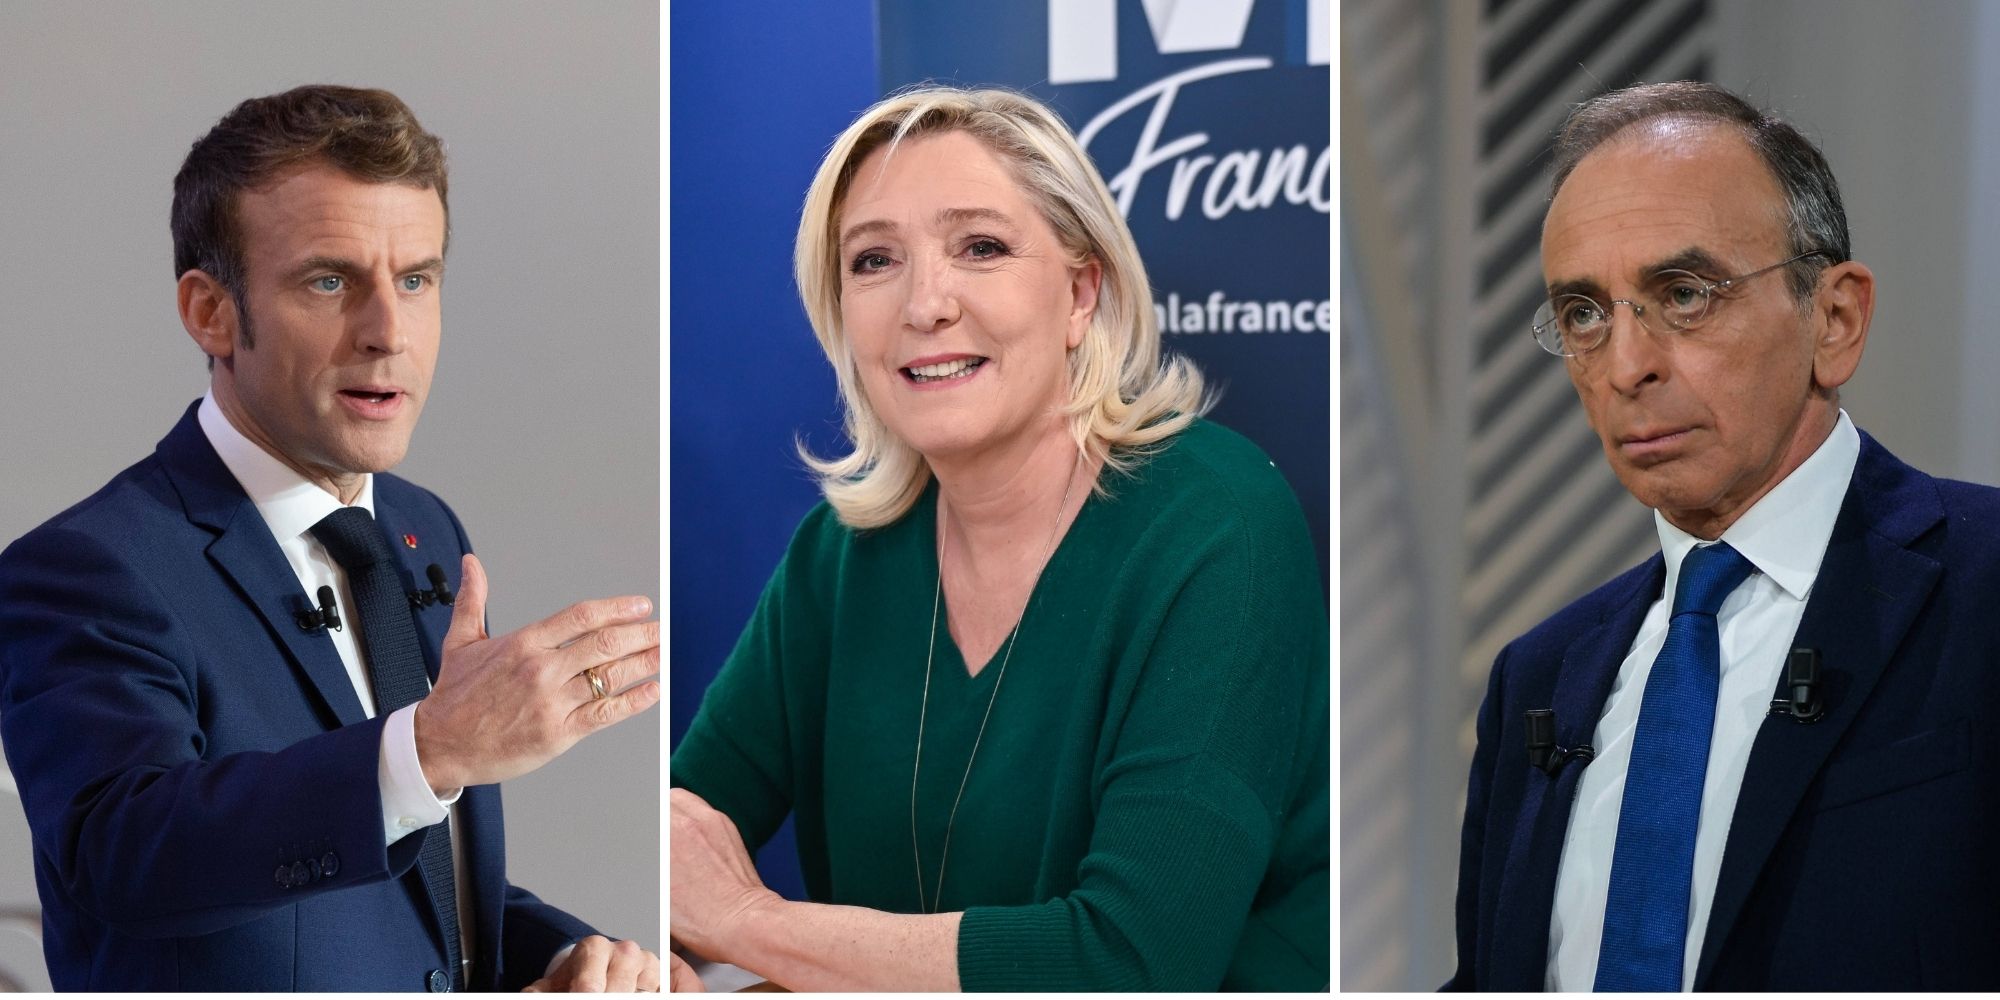 France-Élection : Macron fait du Chirac contre la “banalisation” de l’extrême droite